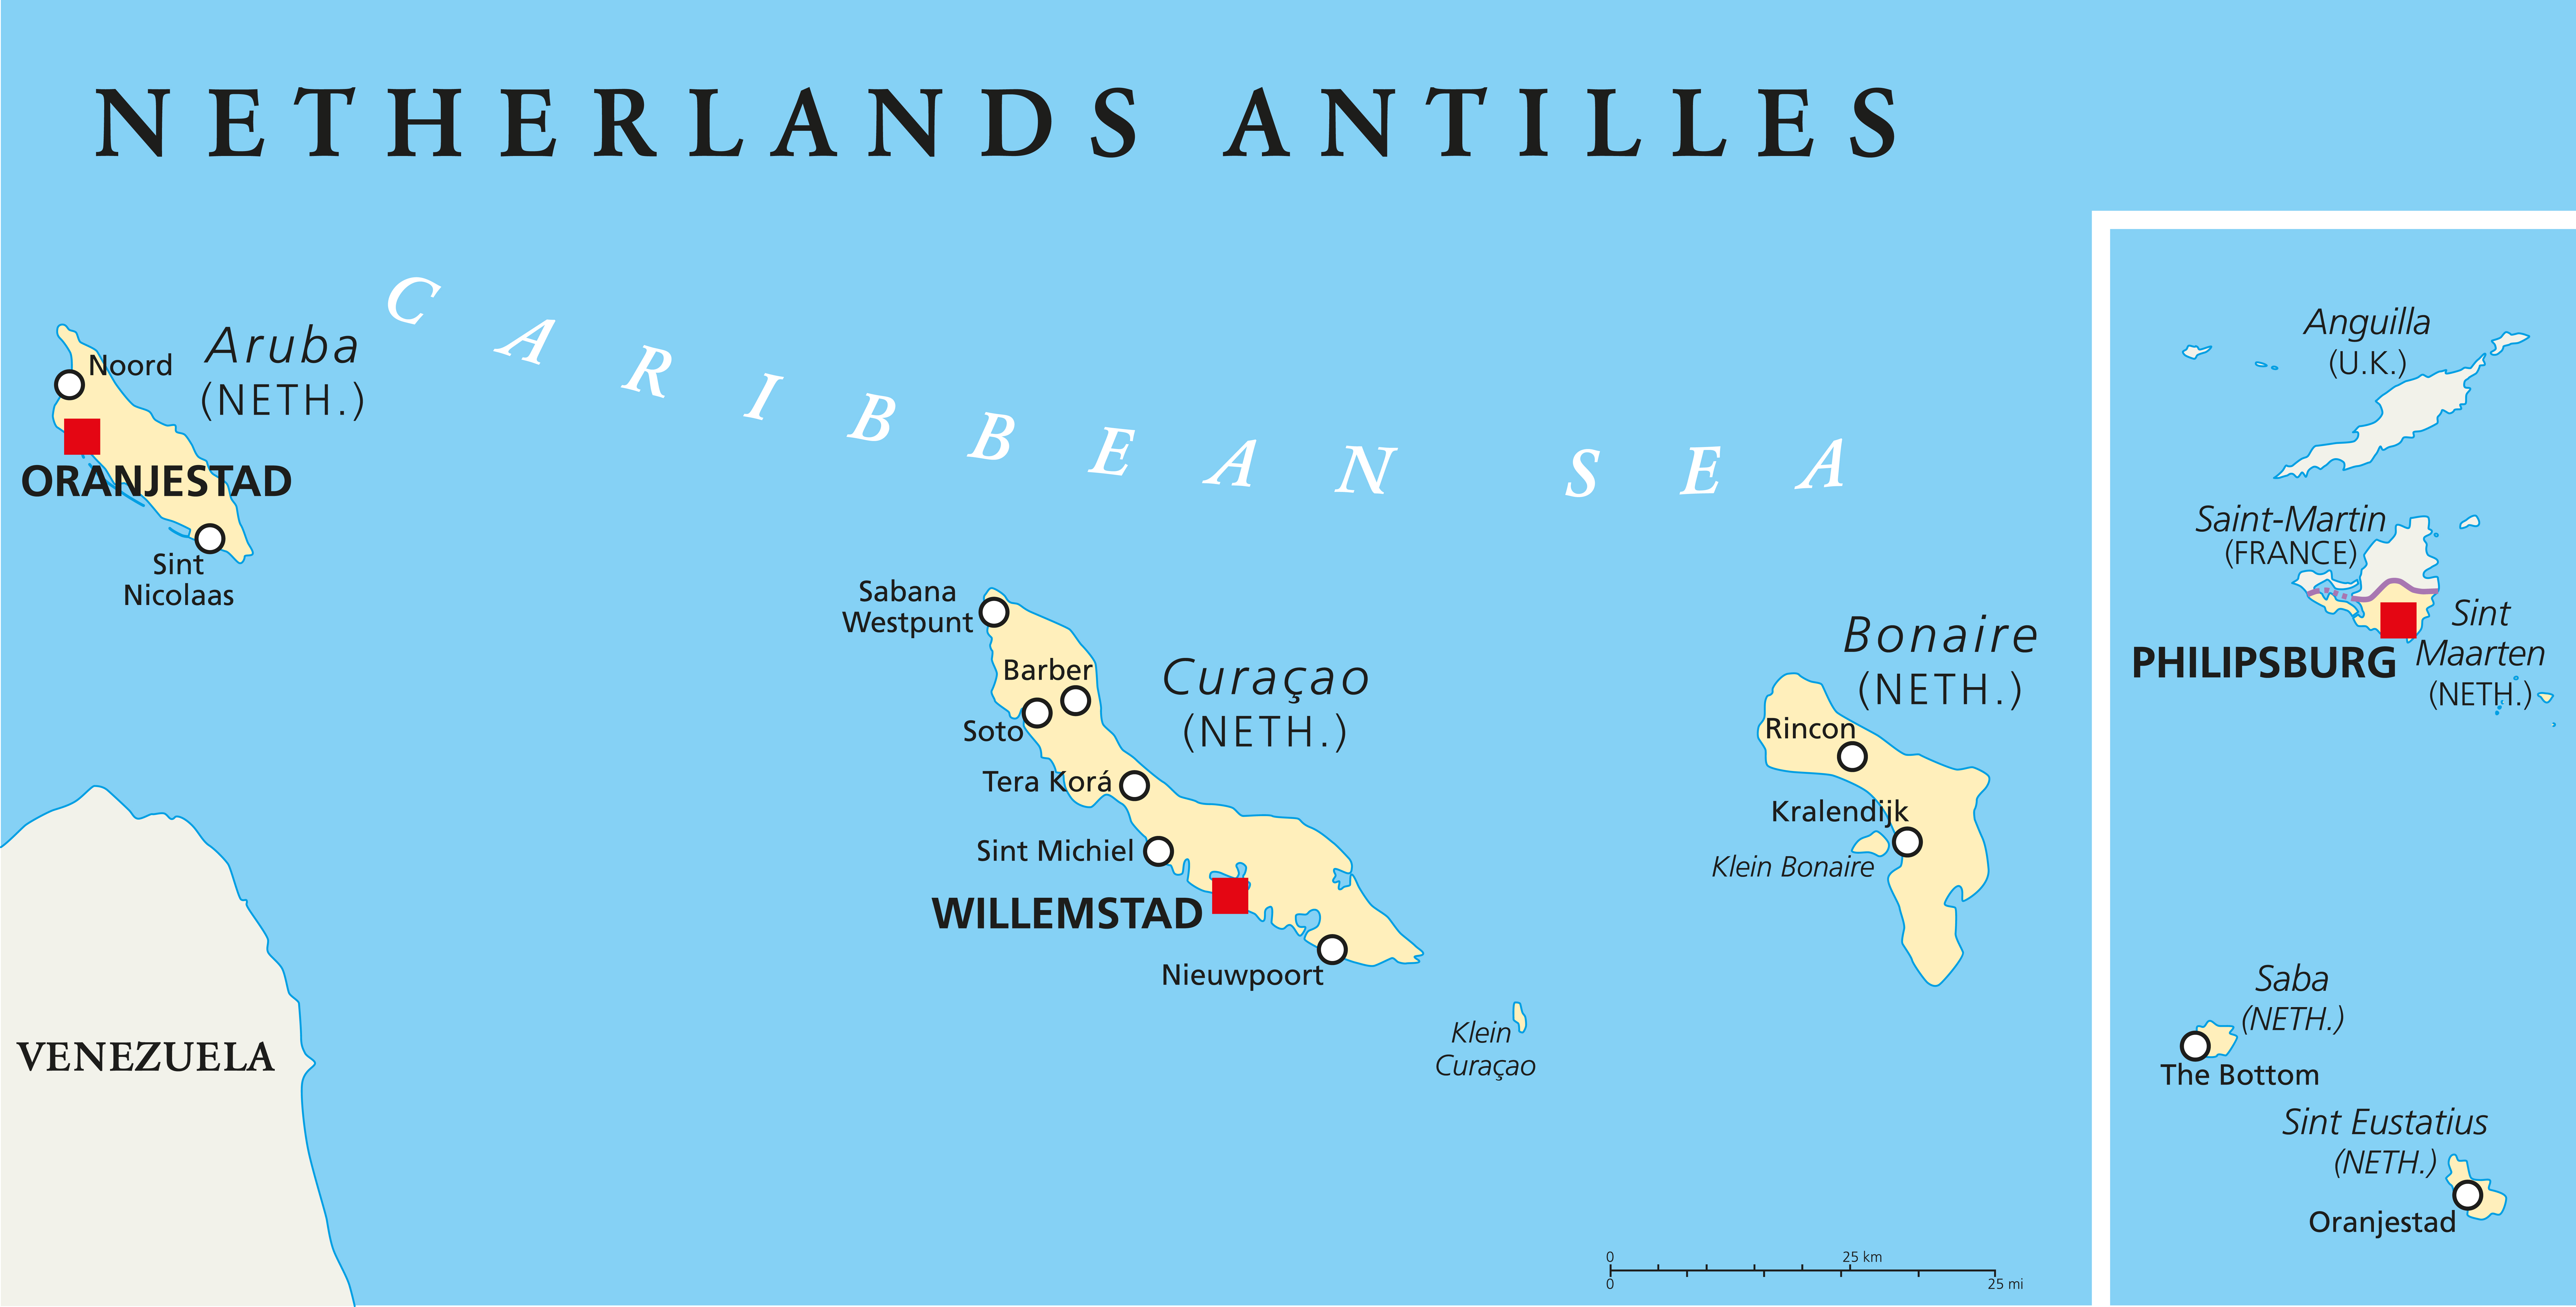 Welches sind die ABC Inseln?